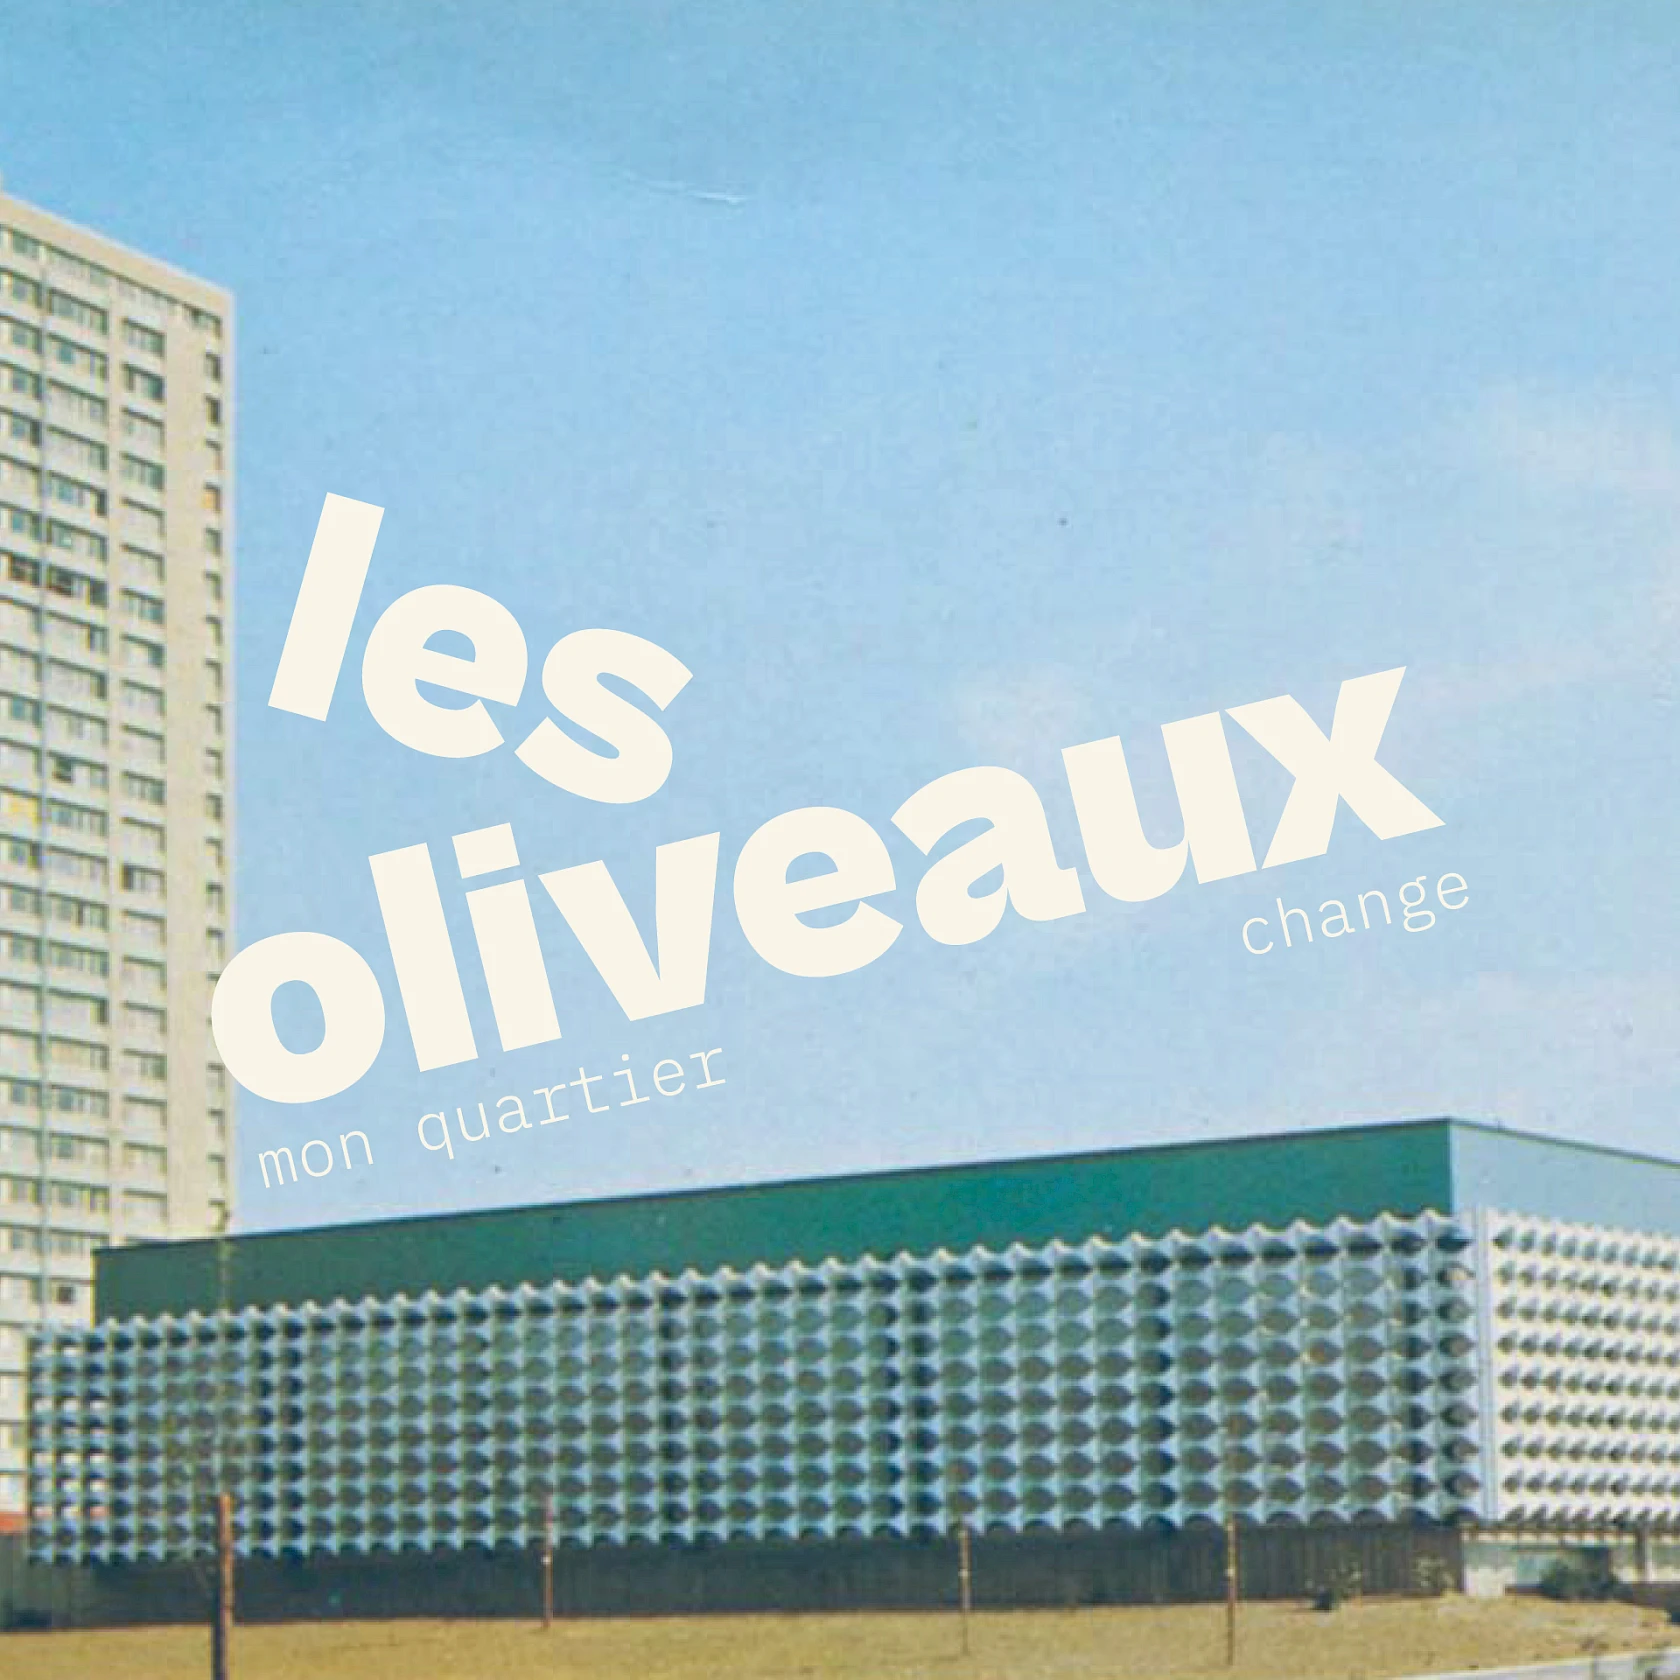 Les Oliveaux / Image No. 1